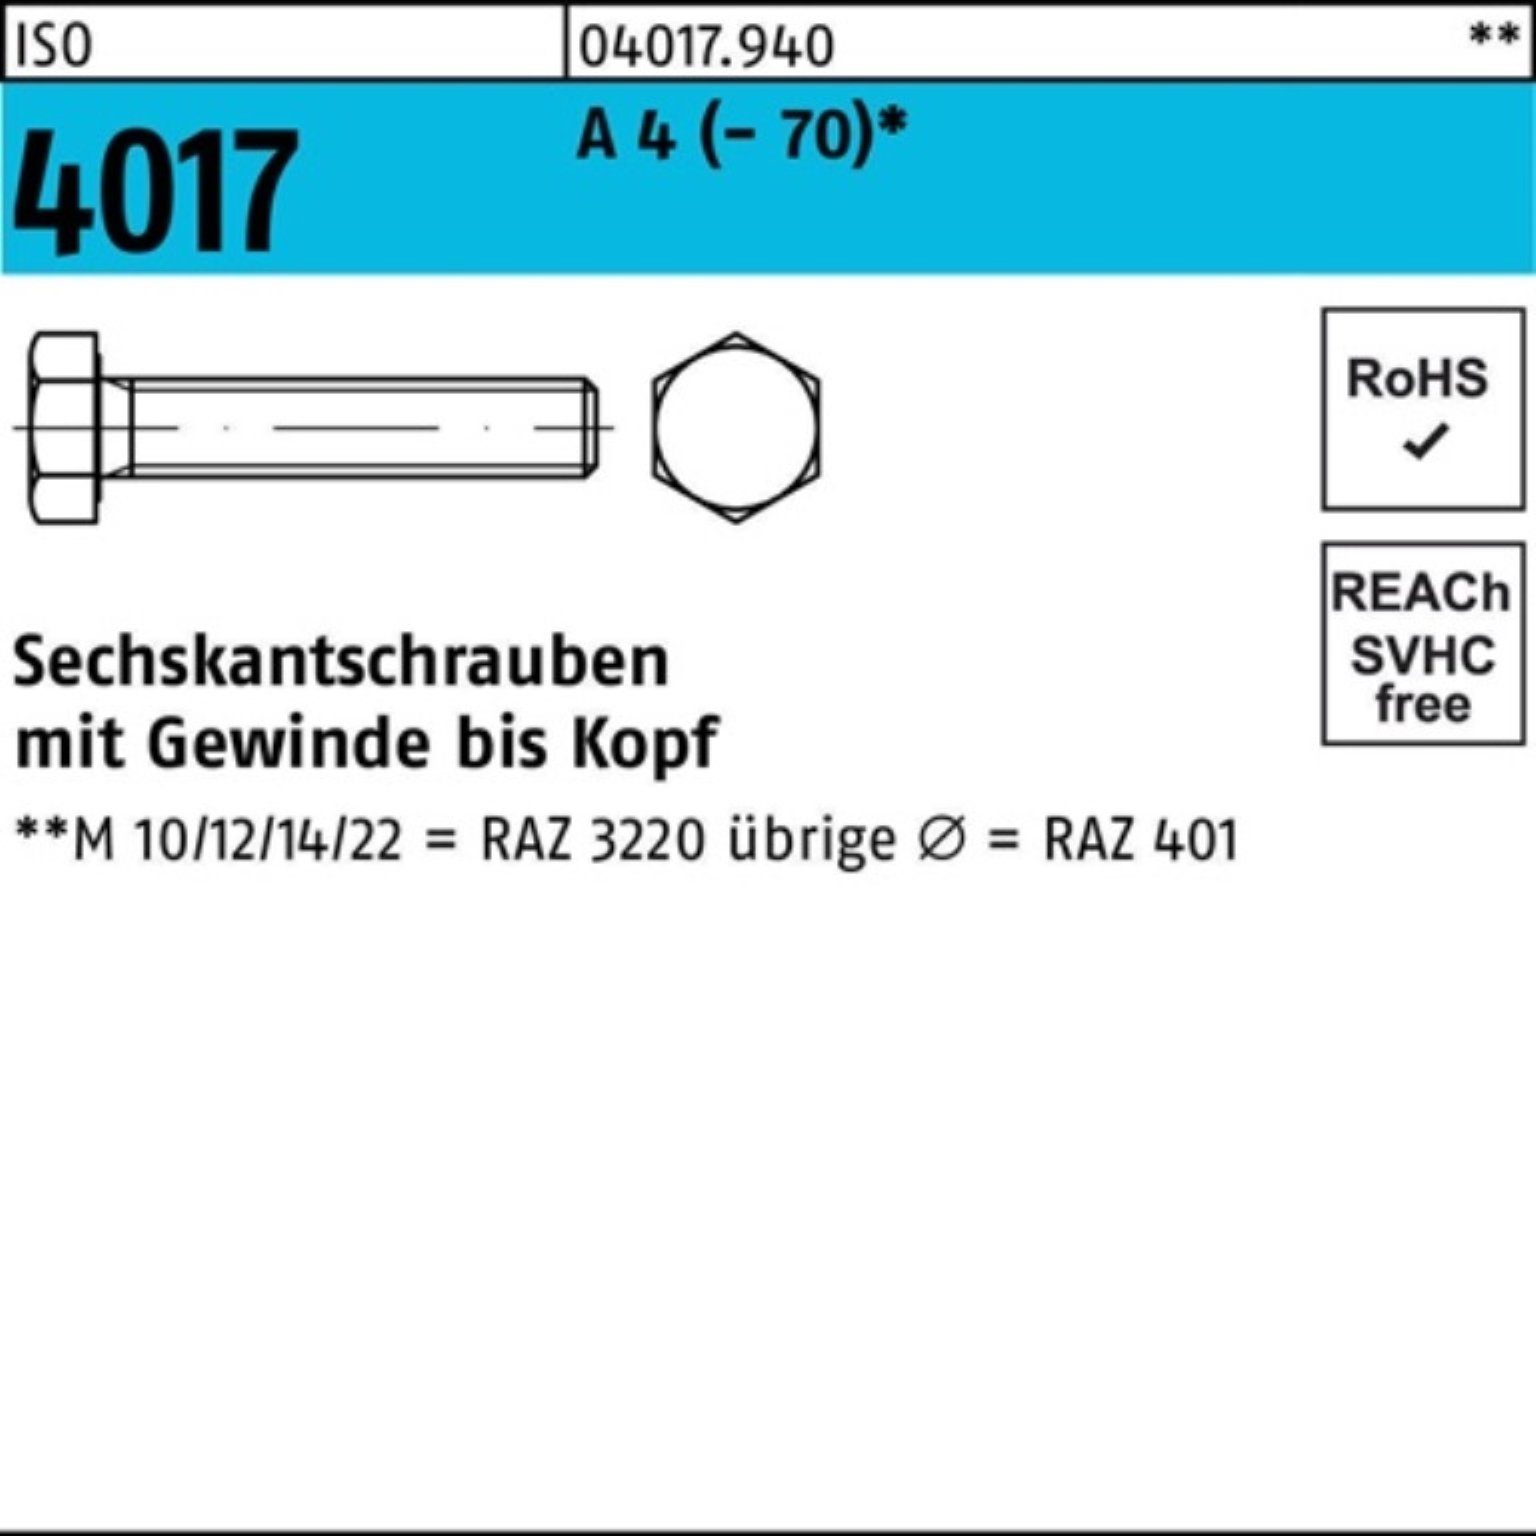 Sechskantschraube Bufab M20x 4017 Sechskantschraube Stück 100er (70) 25 VG A Pack 4 ISO 50